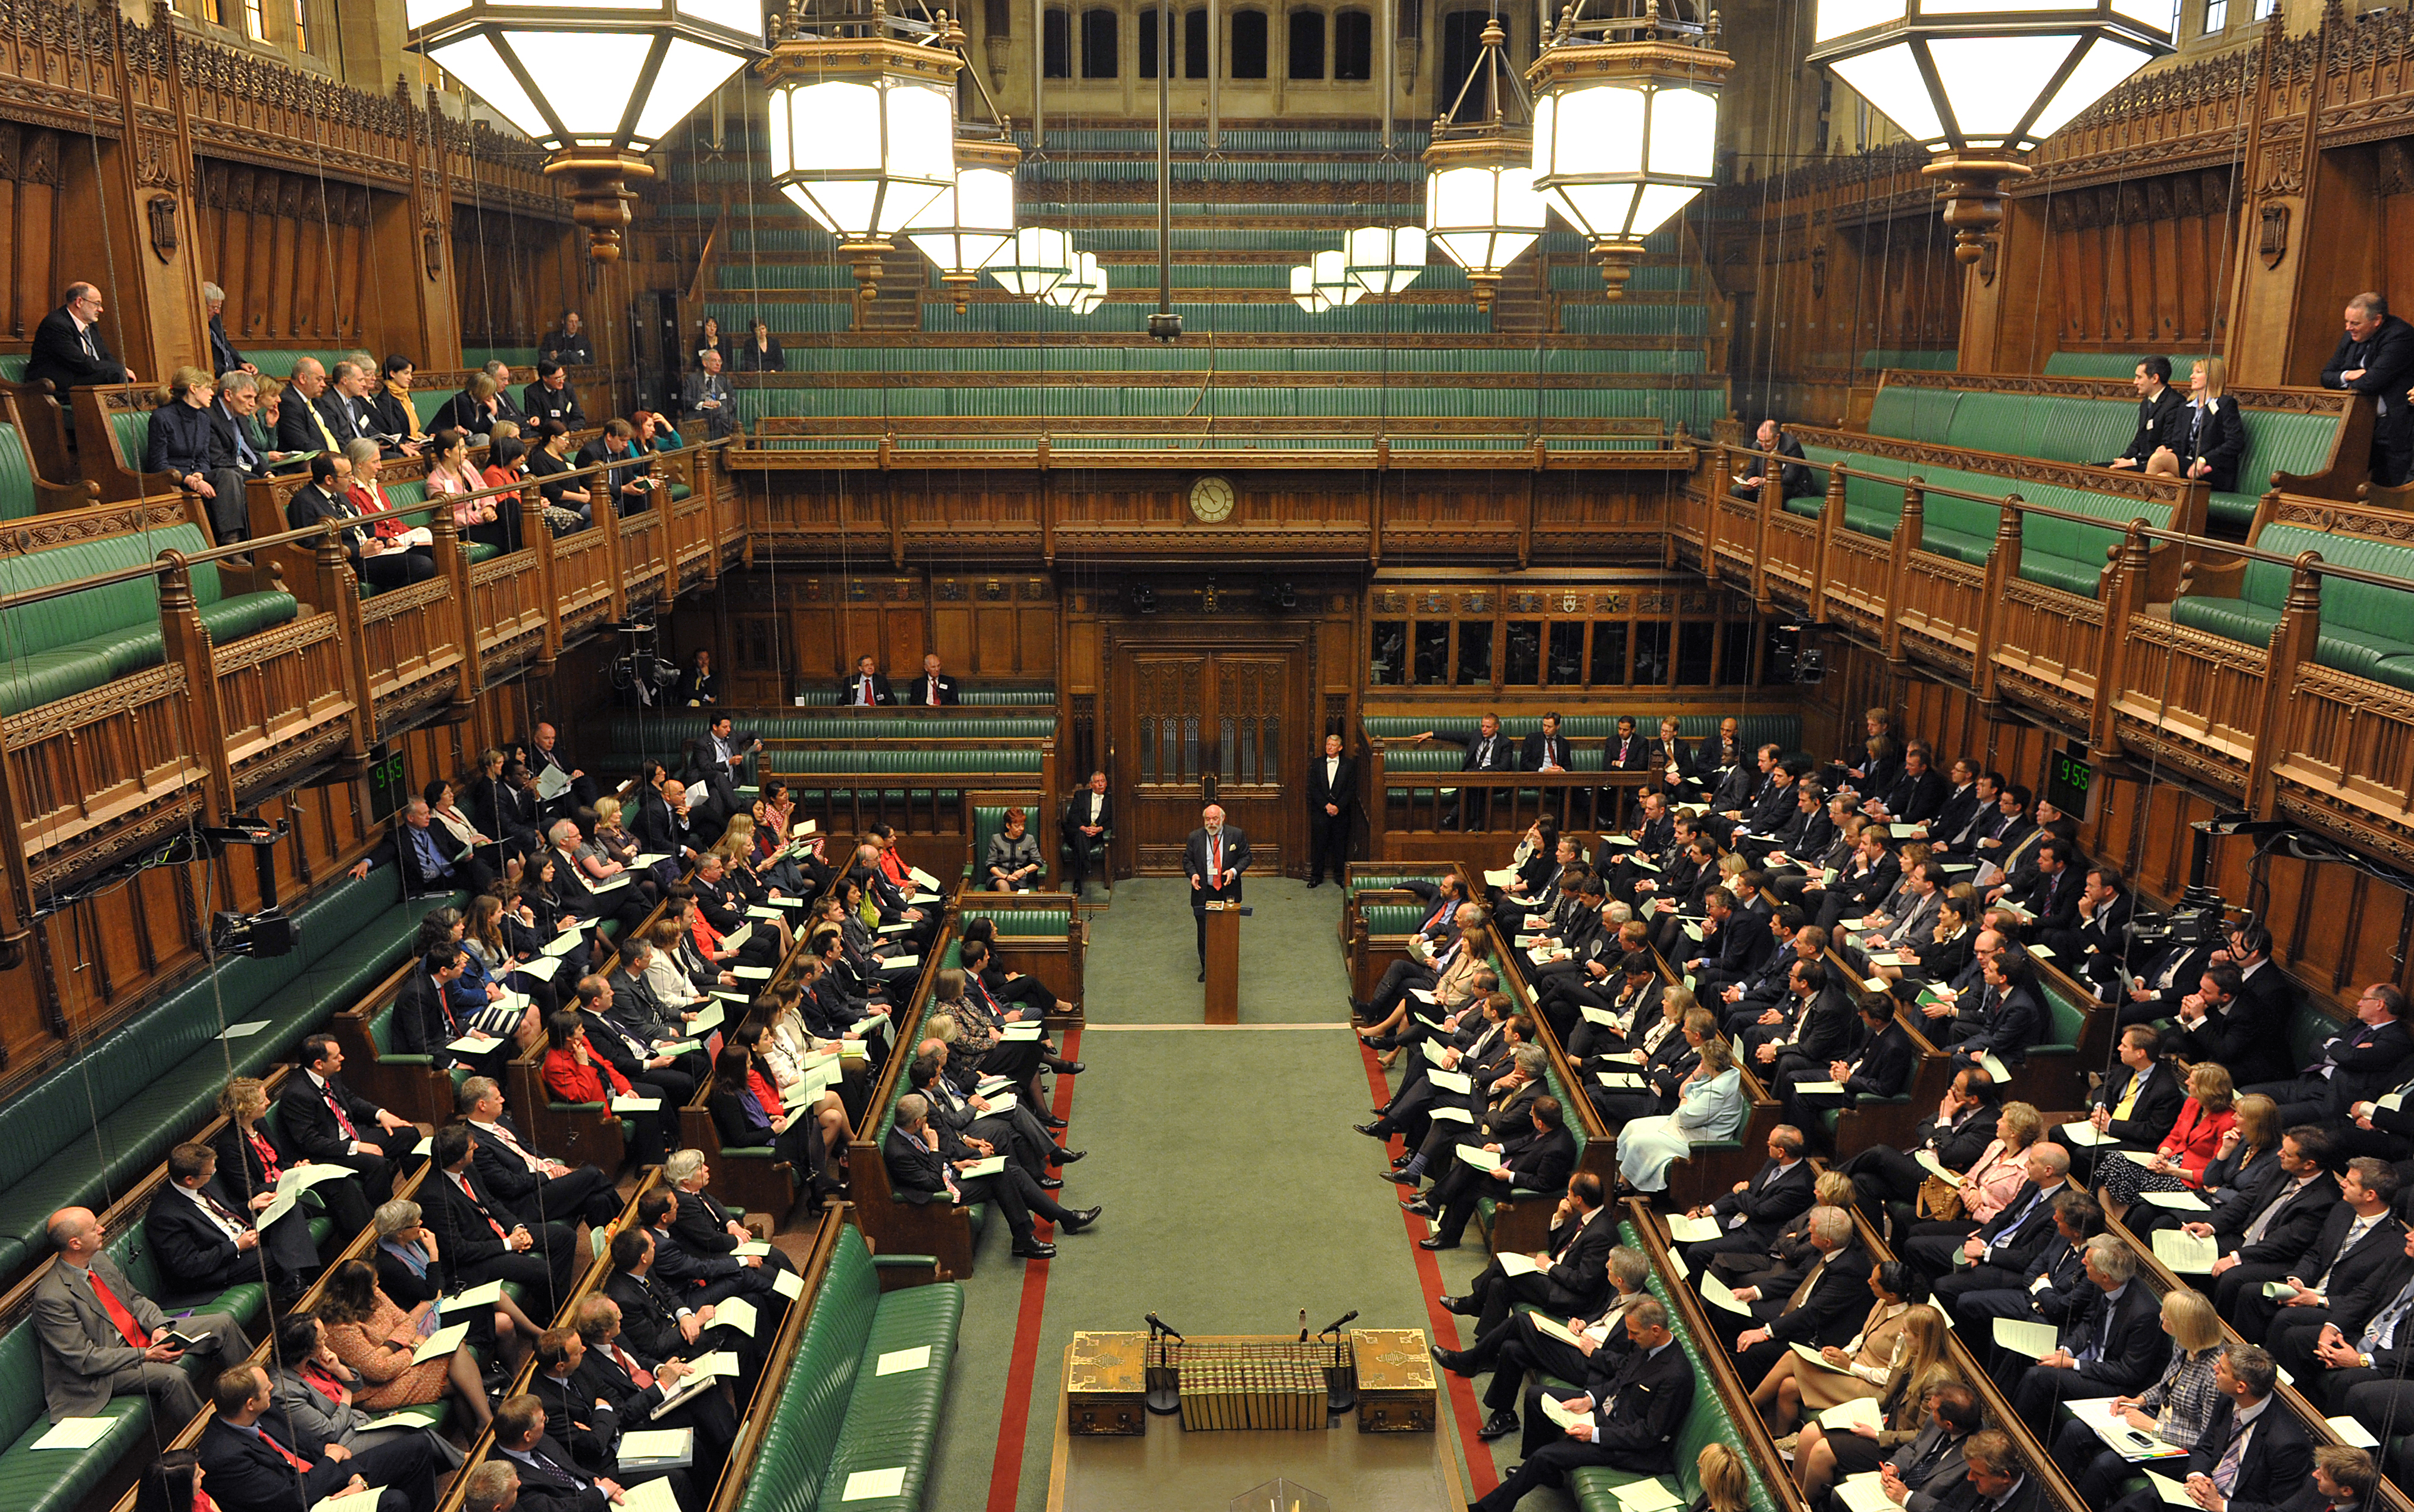 Парламент в новом свете. Палата общин Великобритании. Палаты парламента Великобритании. Палаты общин (House of Commons). Парламент Великобритании 1997.